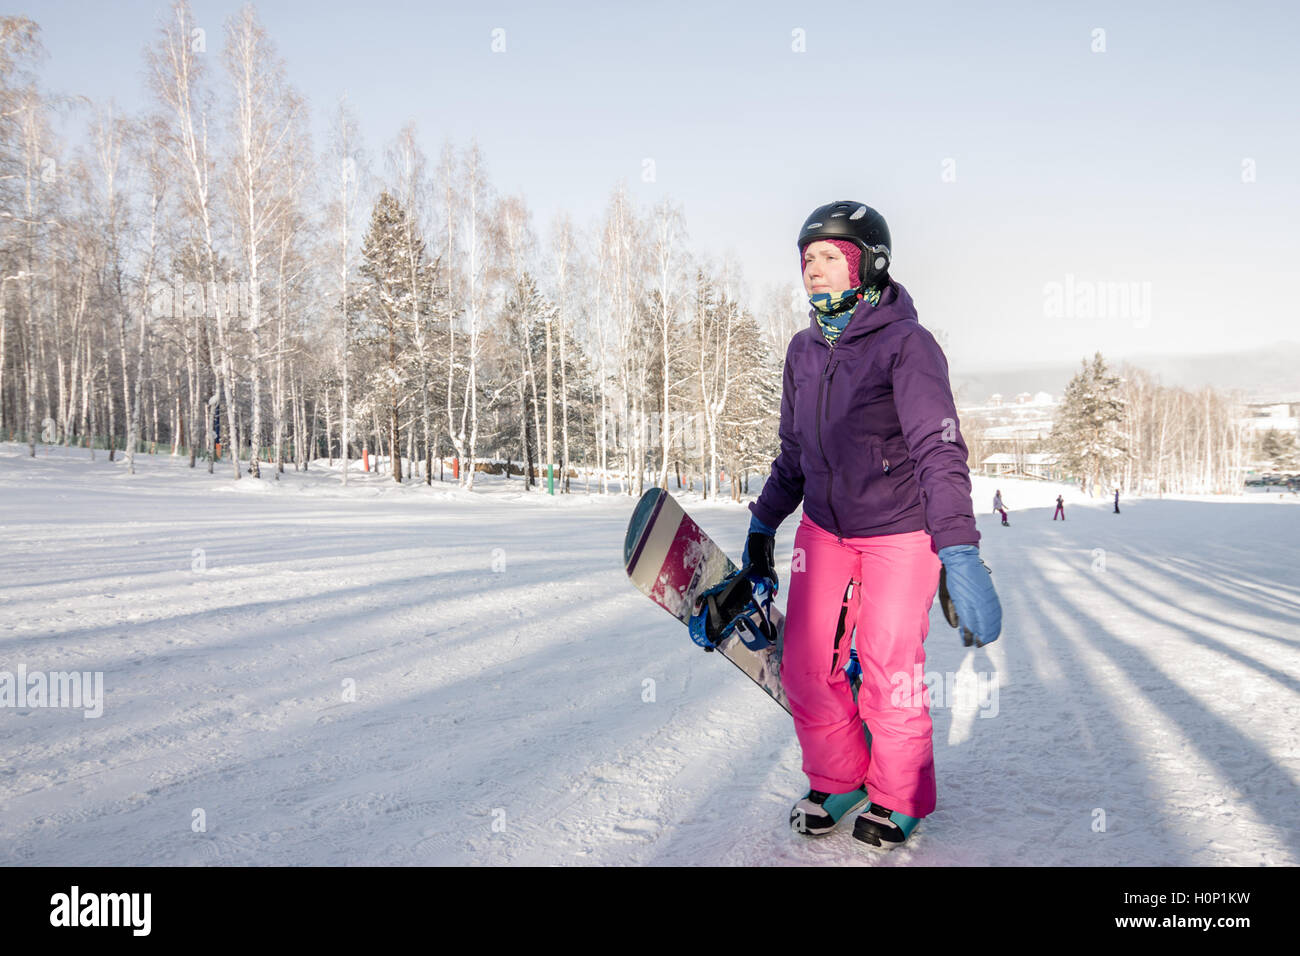 Mädchen in lila Jacke und rosa Hose mit Snowboard in den Händen der bergauf  im winter Stockfotografie - Alamy